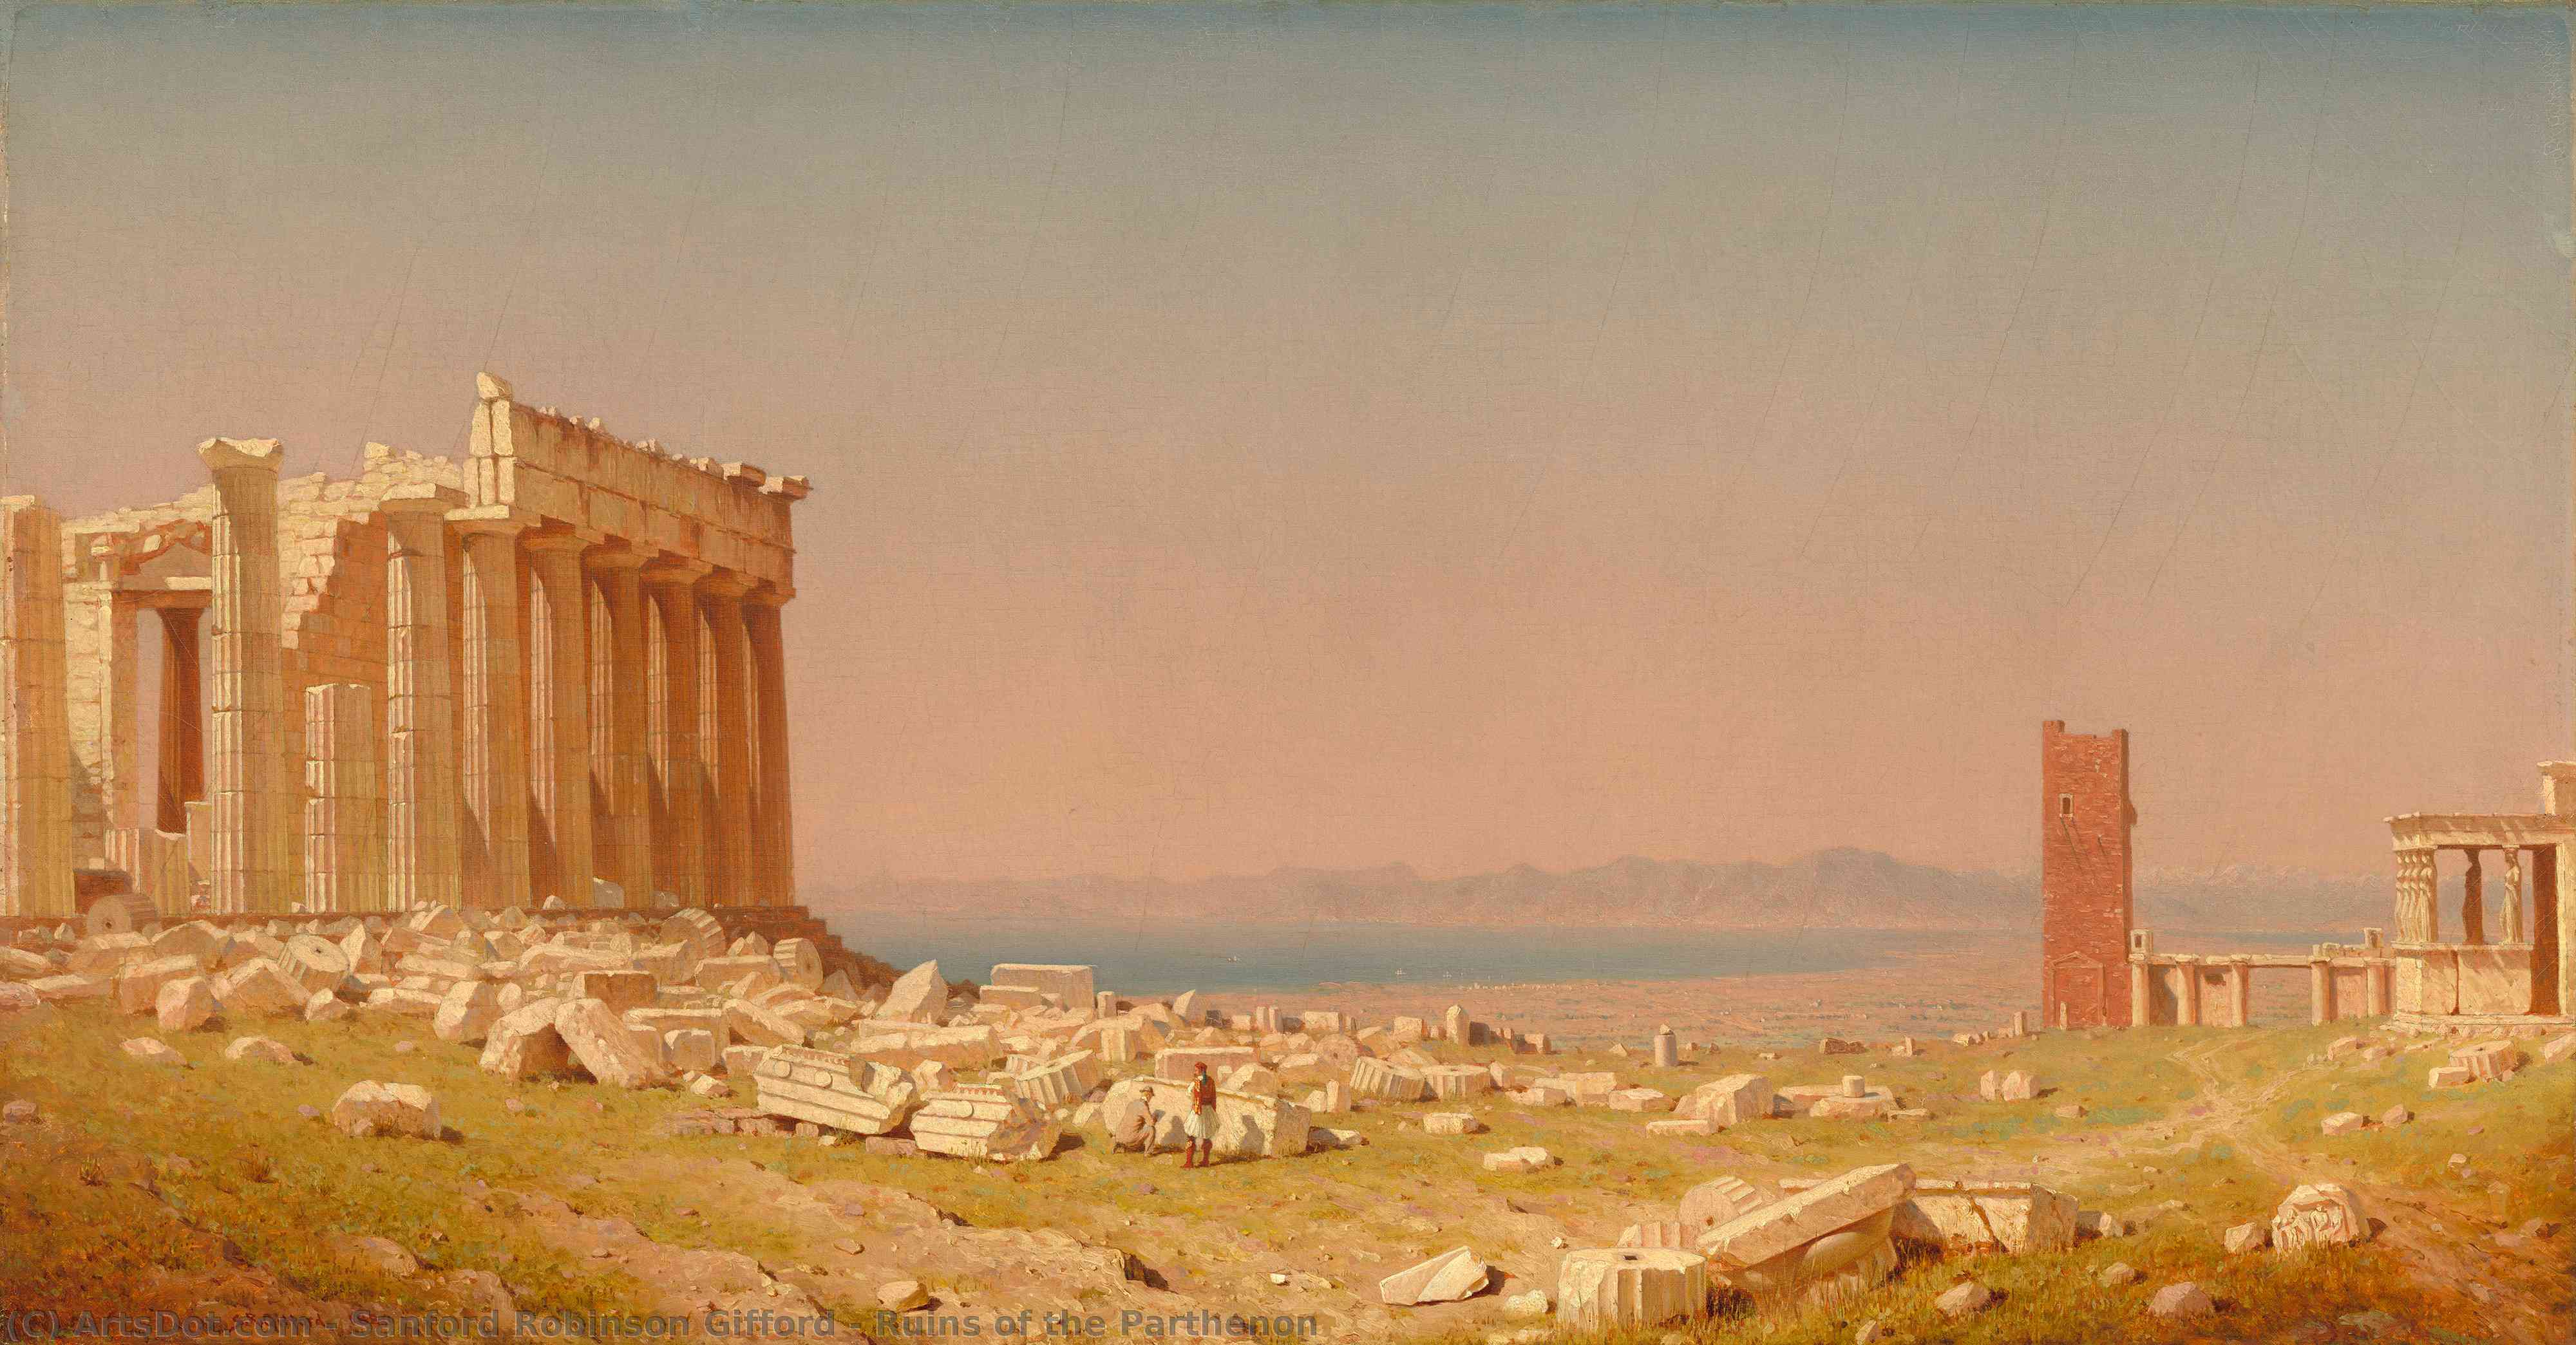 WikiOO.org - Enciklopedija likovnih umjetnosti - Slikarstvo, umjetnička djela Sanford Robinson Gifford - Ruins of the Parthenon